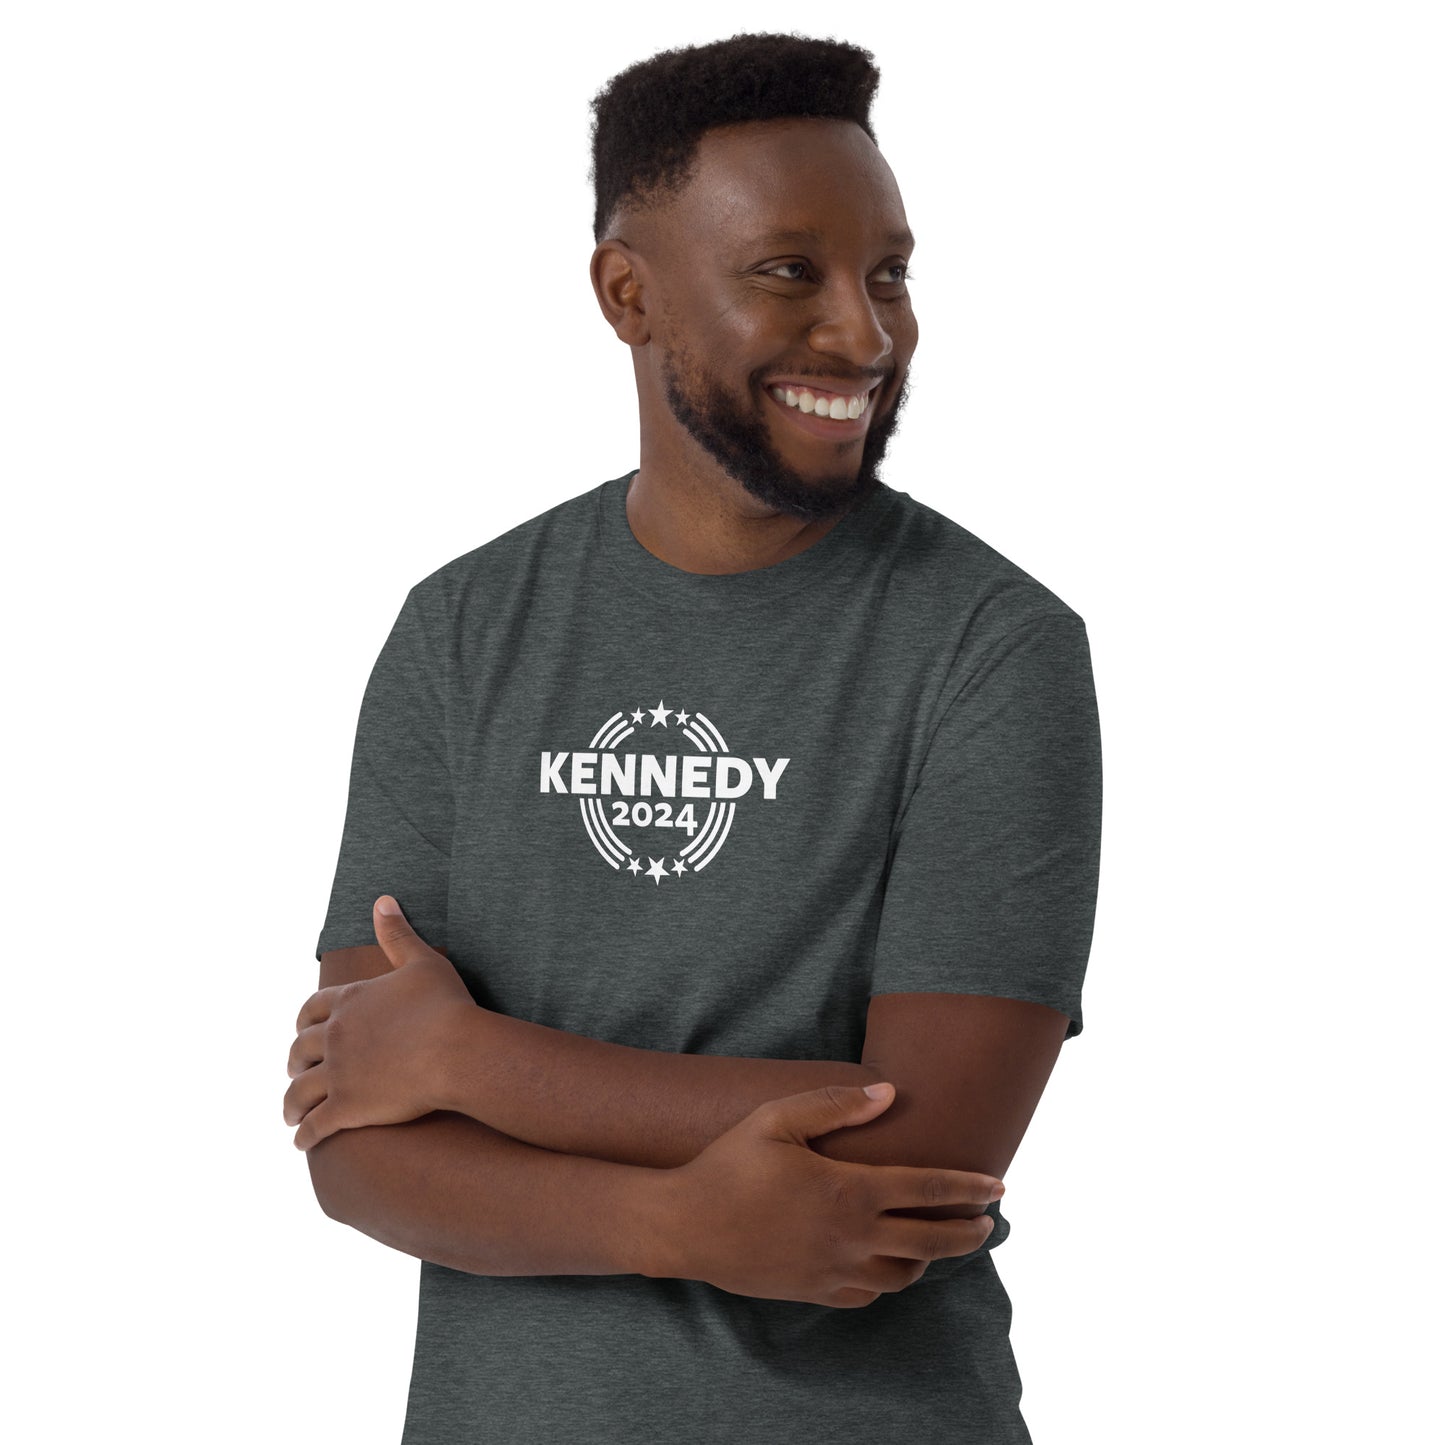 KENNEDY 2024 - Short-Sleeve Unisex T-Shirt - CIRC DK